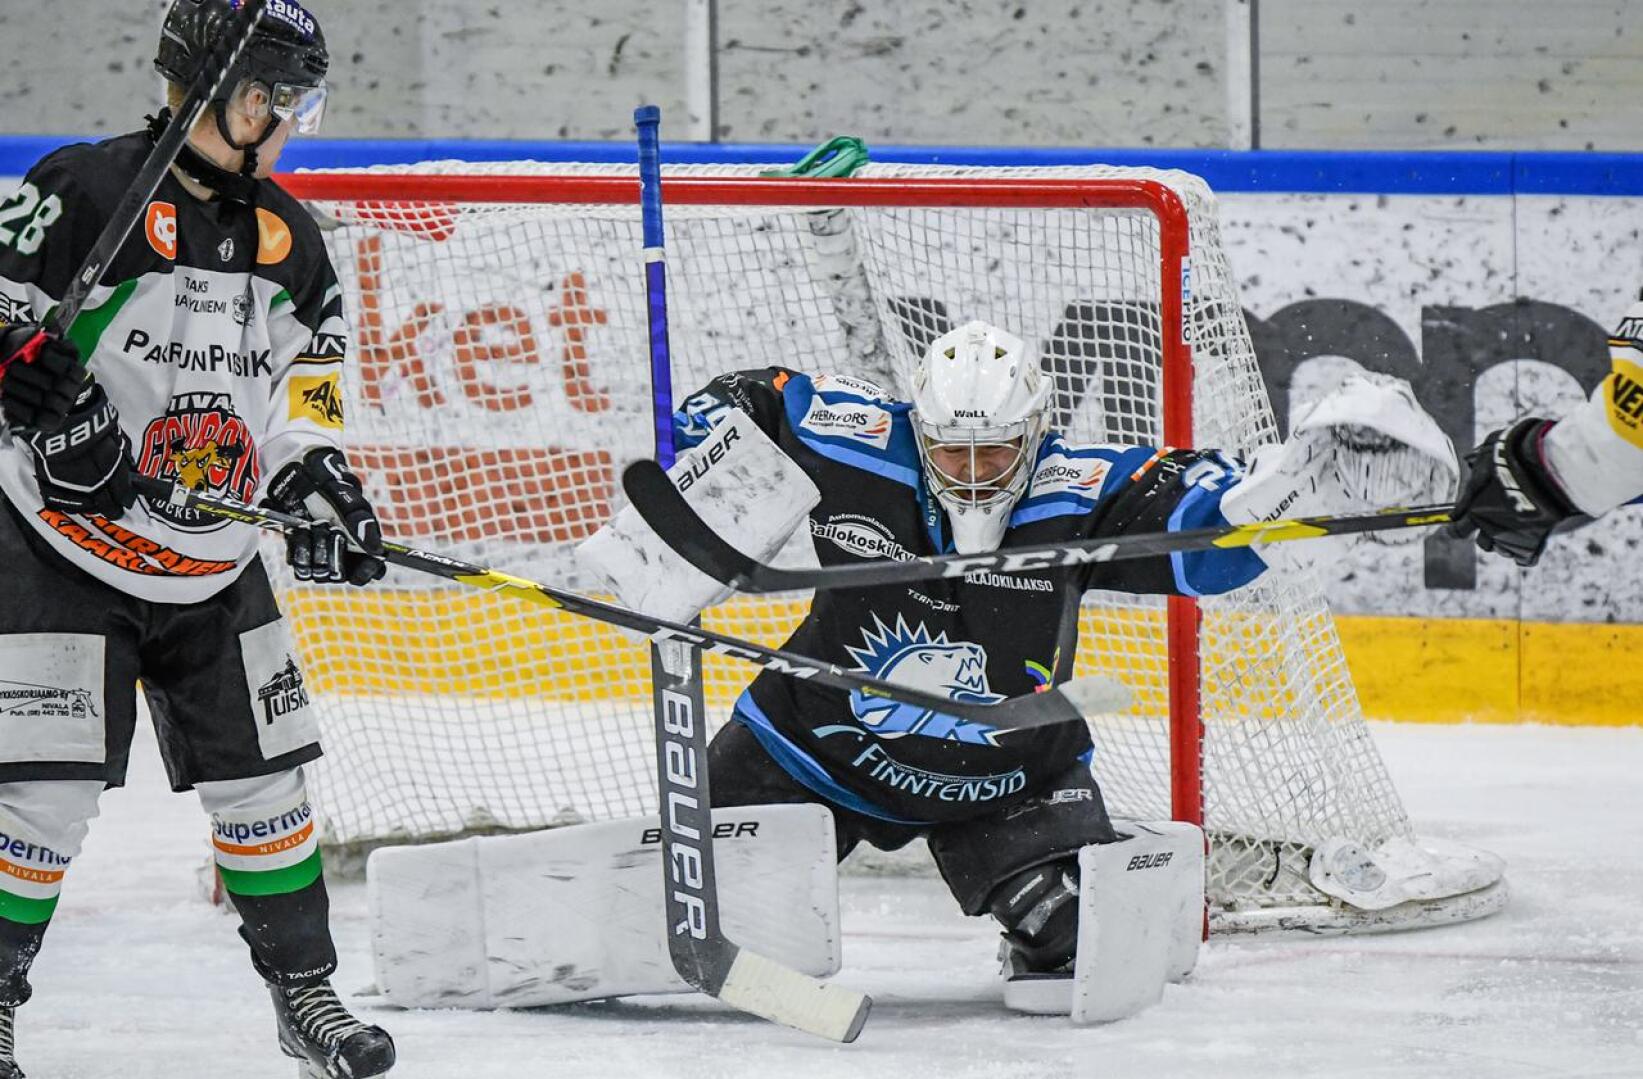 Ylivieskan Jääkarhut on aloittanut edustusjoukkueen rakentamisen ensi kaudelle jääkiekon II-divisioonaan. Kuvassa on maalivahti Taavetti Mattila.